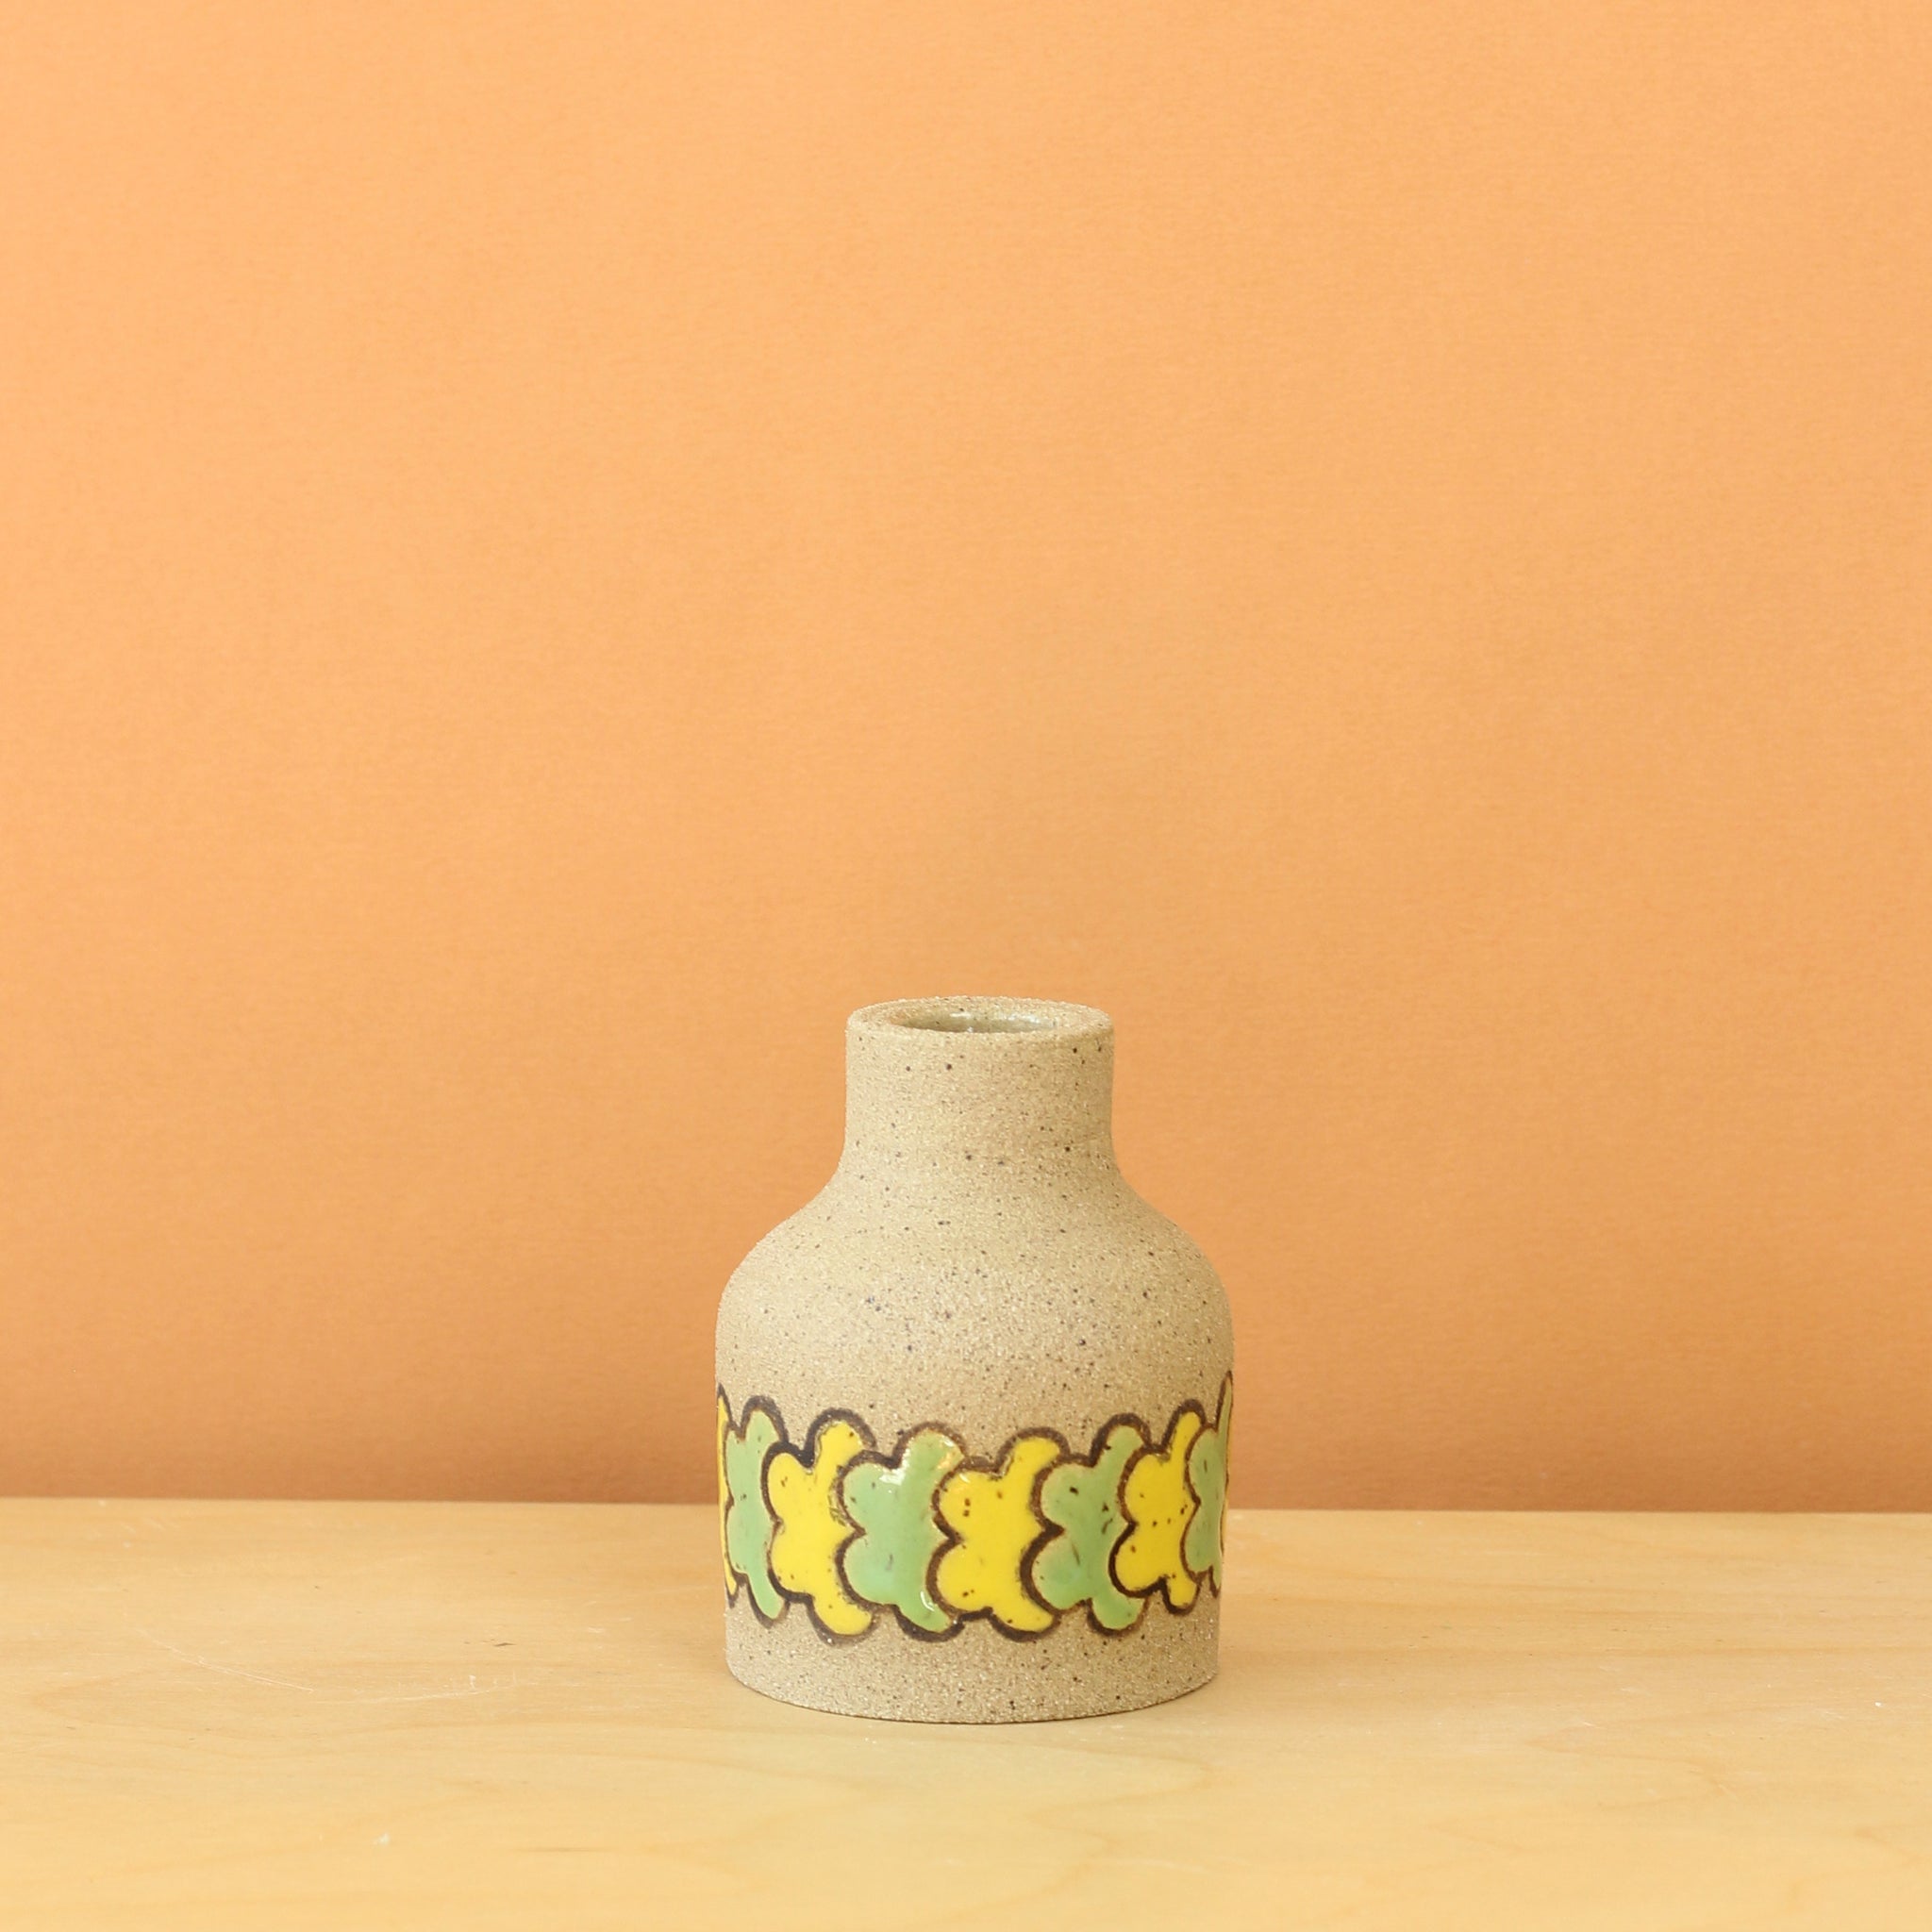 Glazed Stoneware Bud Vase with Overlapping Flower Pattern